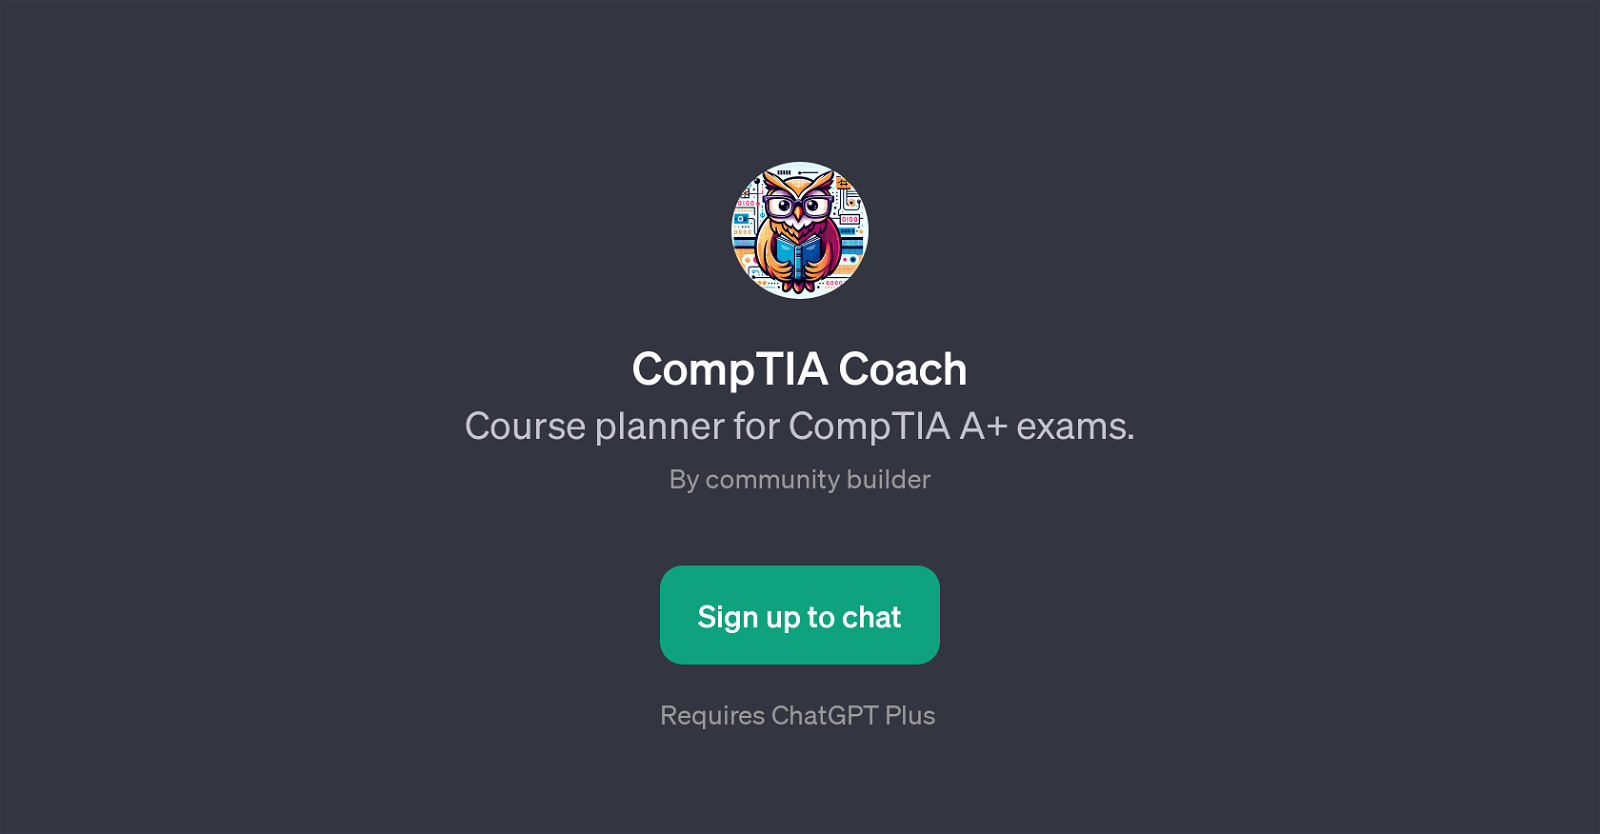 CompTIA Coach website